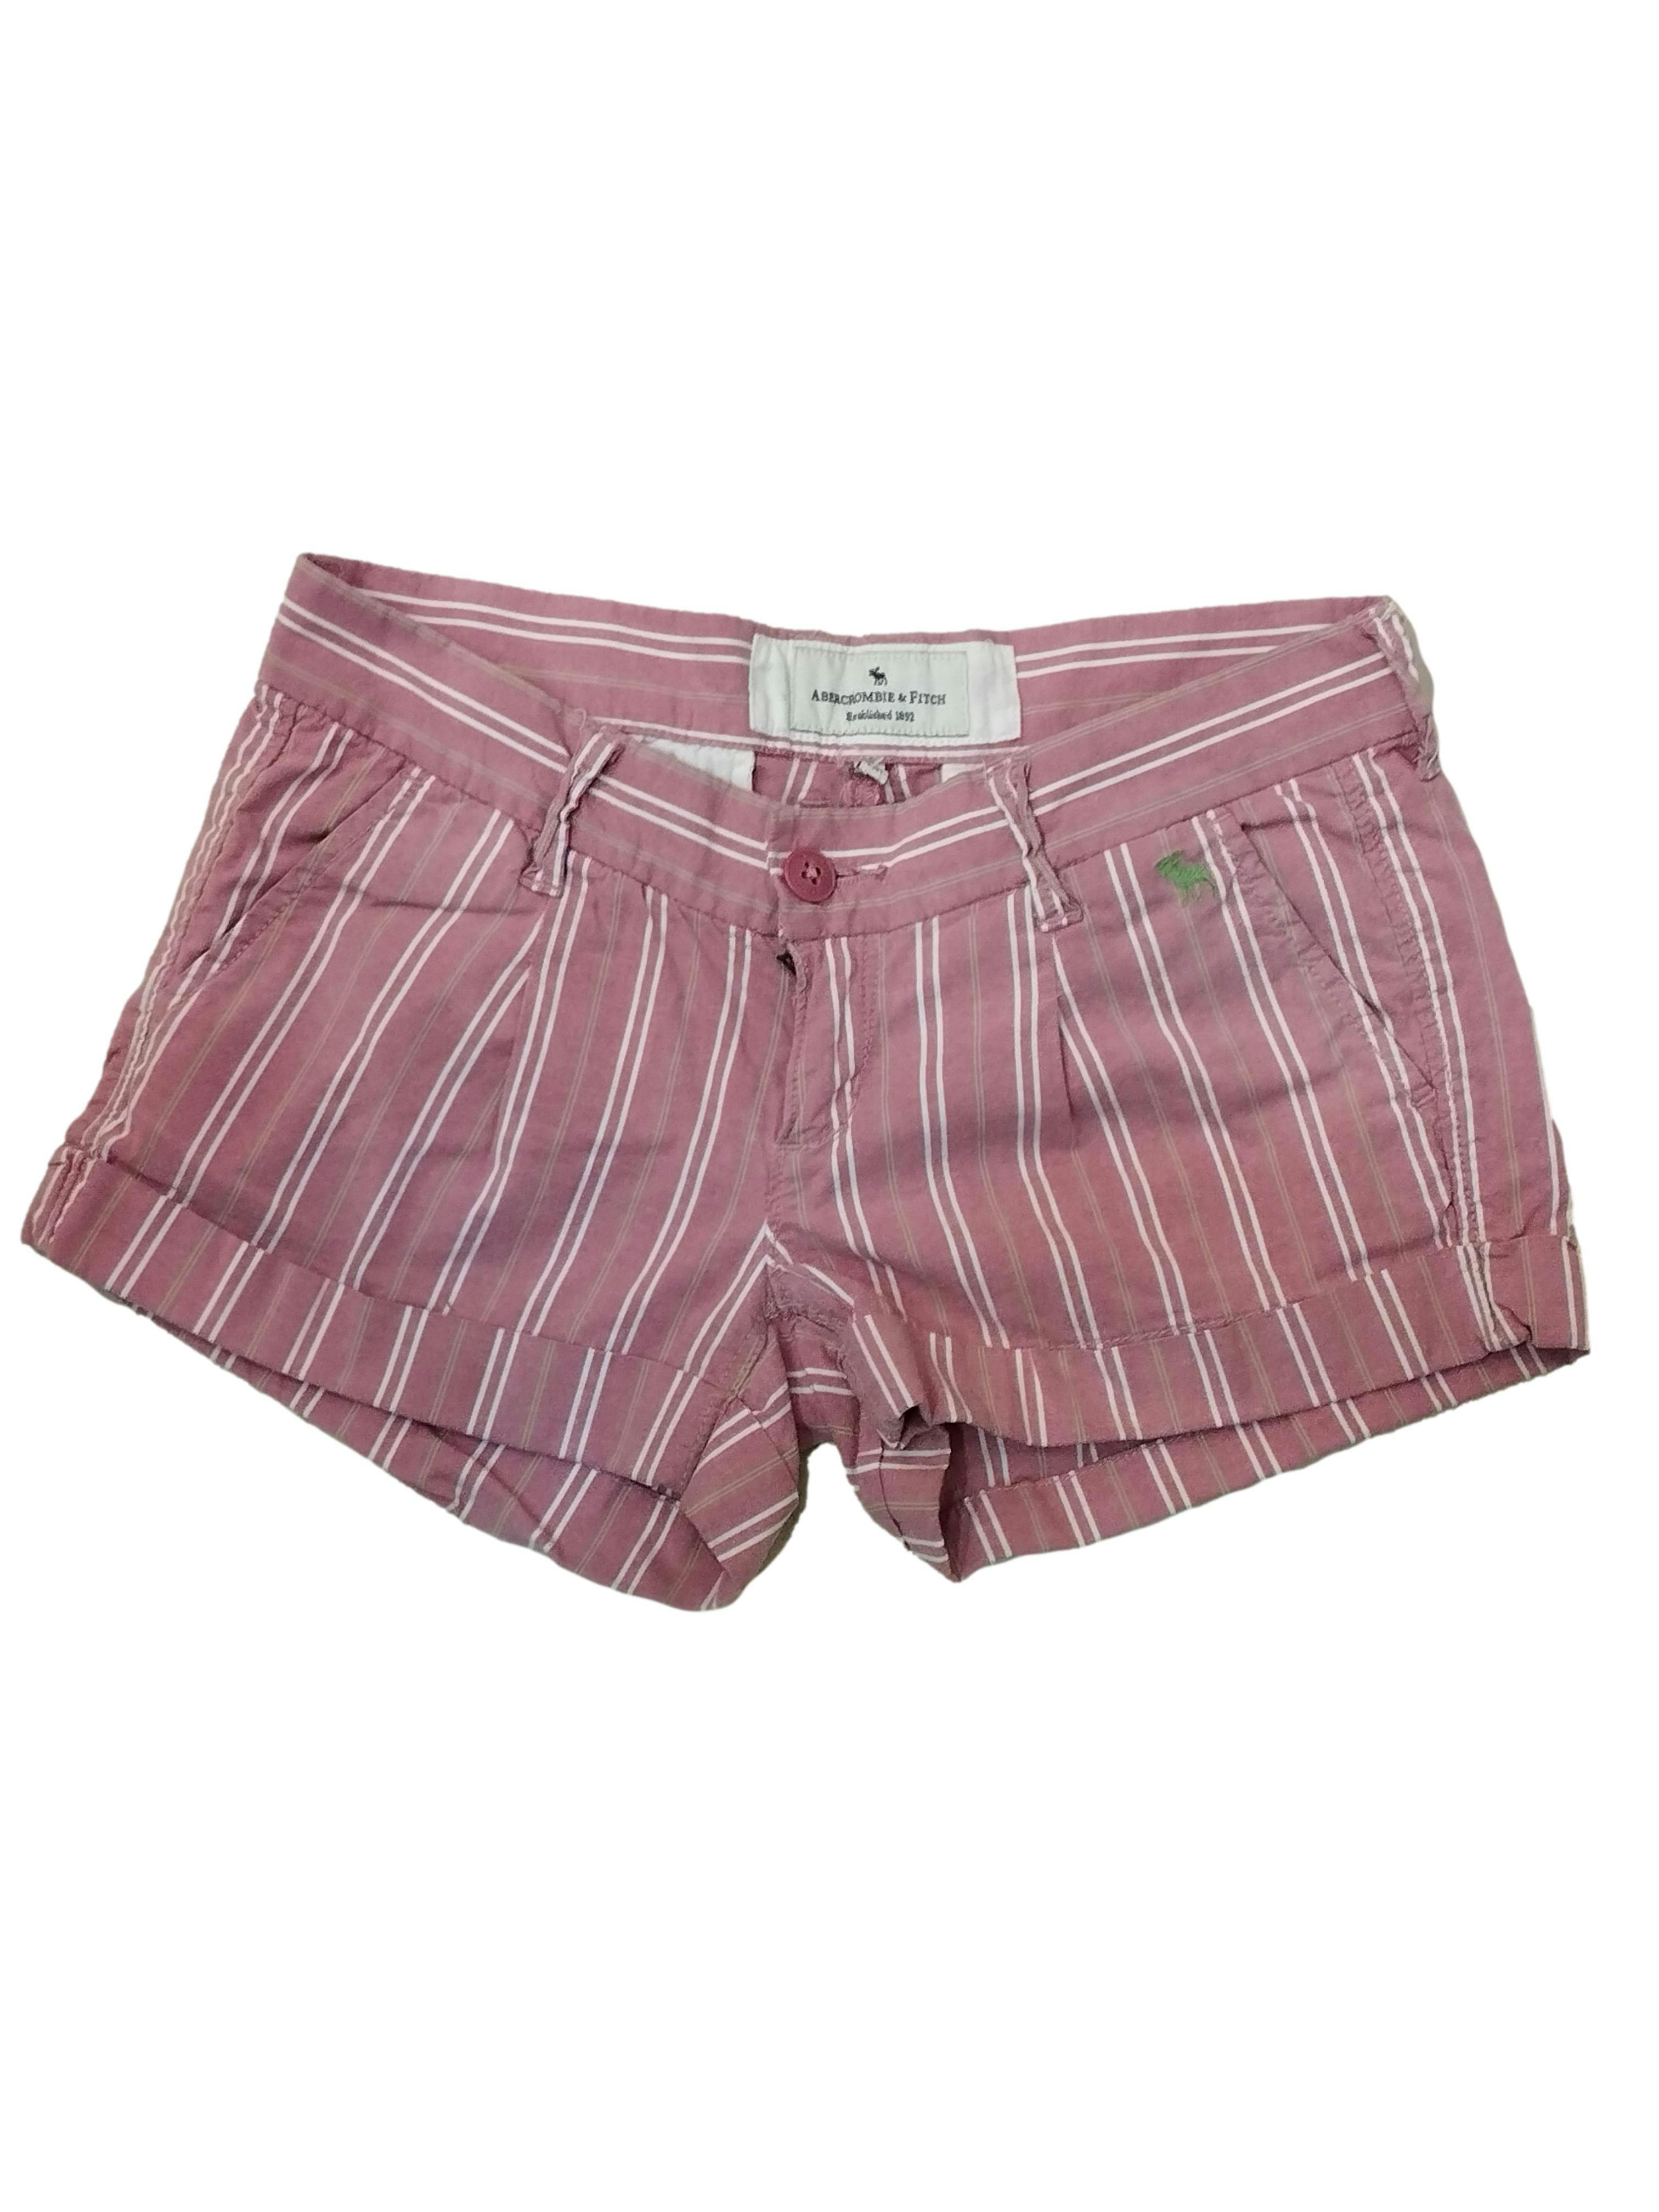 Short Abercrombie & Fitch palo rosa con líneas blanco y verde, bolsillos, cierre y botón delantero, doblez en la basta. Cintura: 70 cm, Tiro: 16 cm, Largo: 28 cm